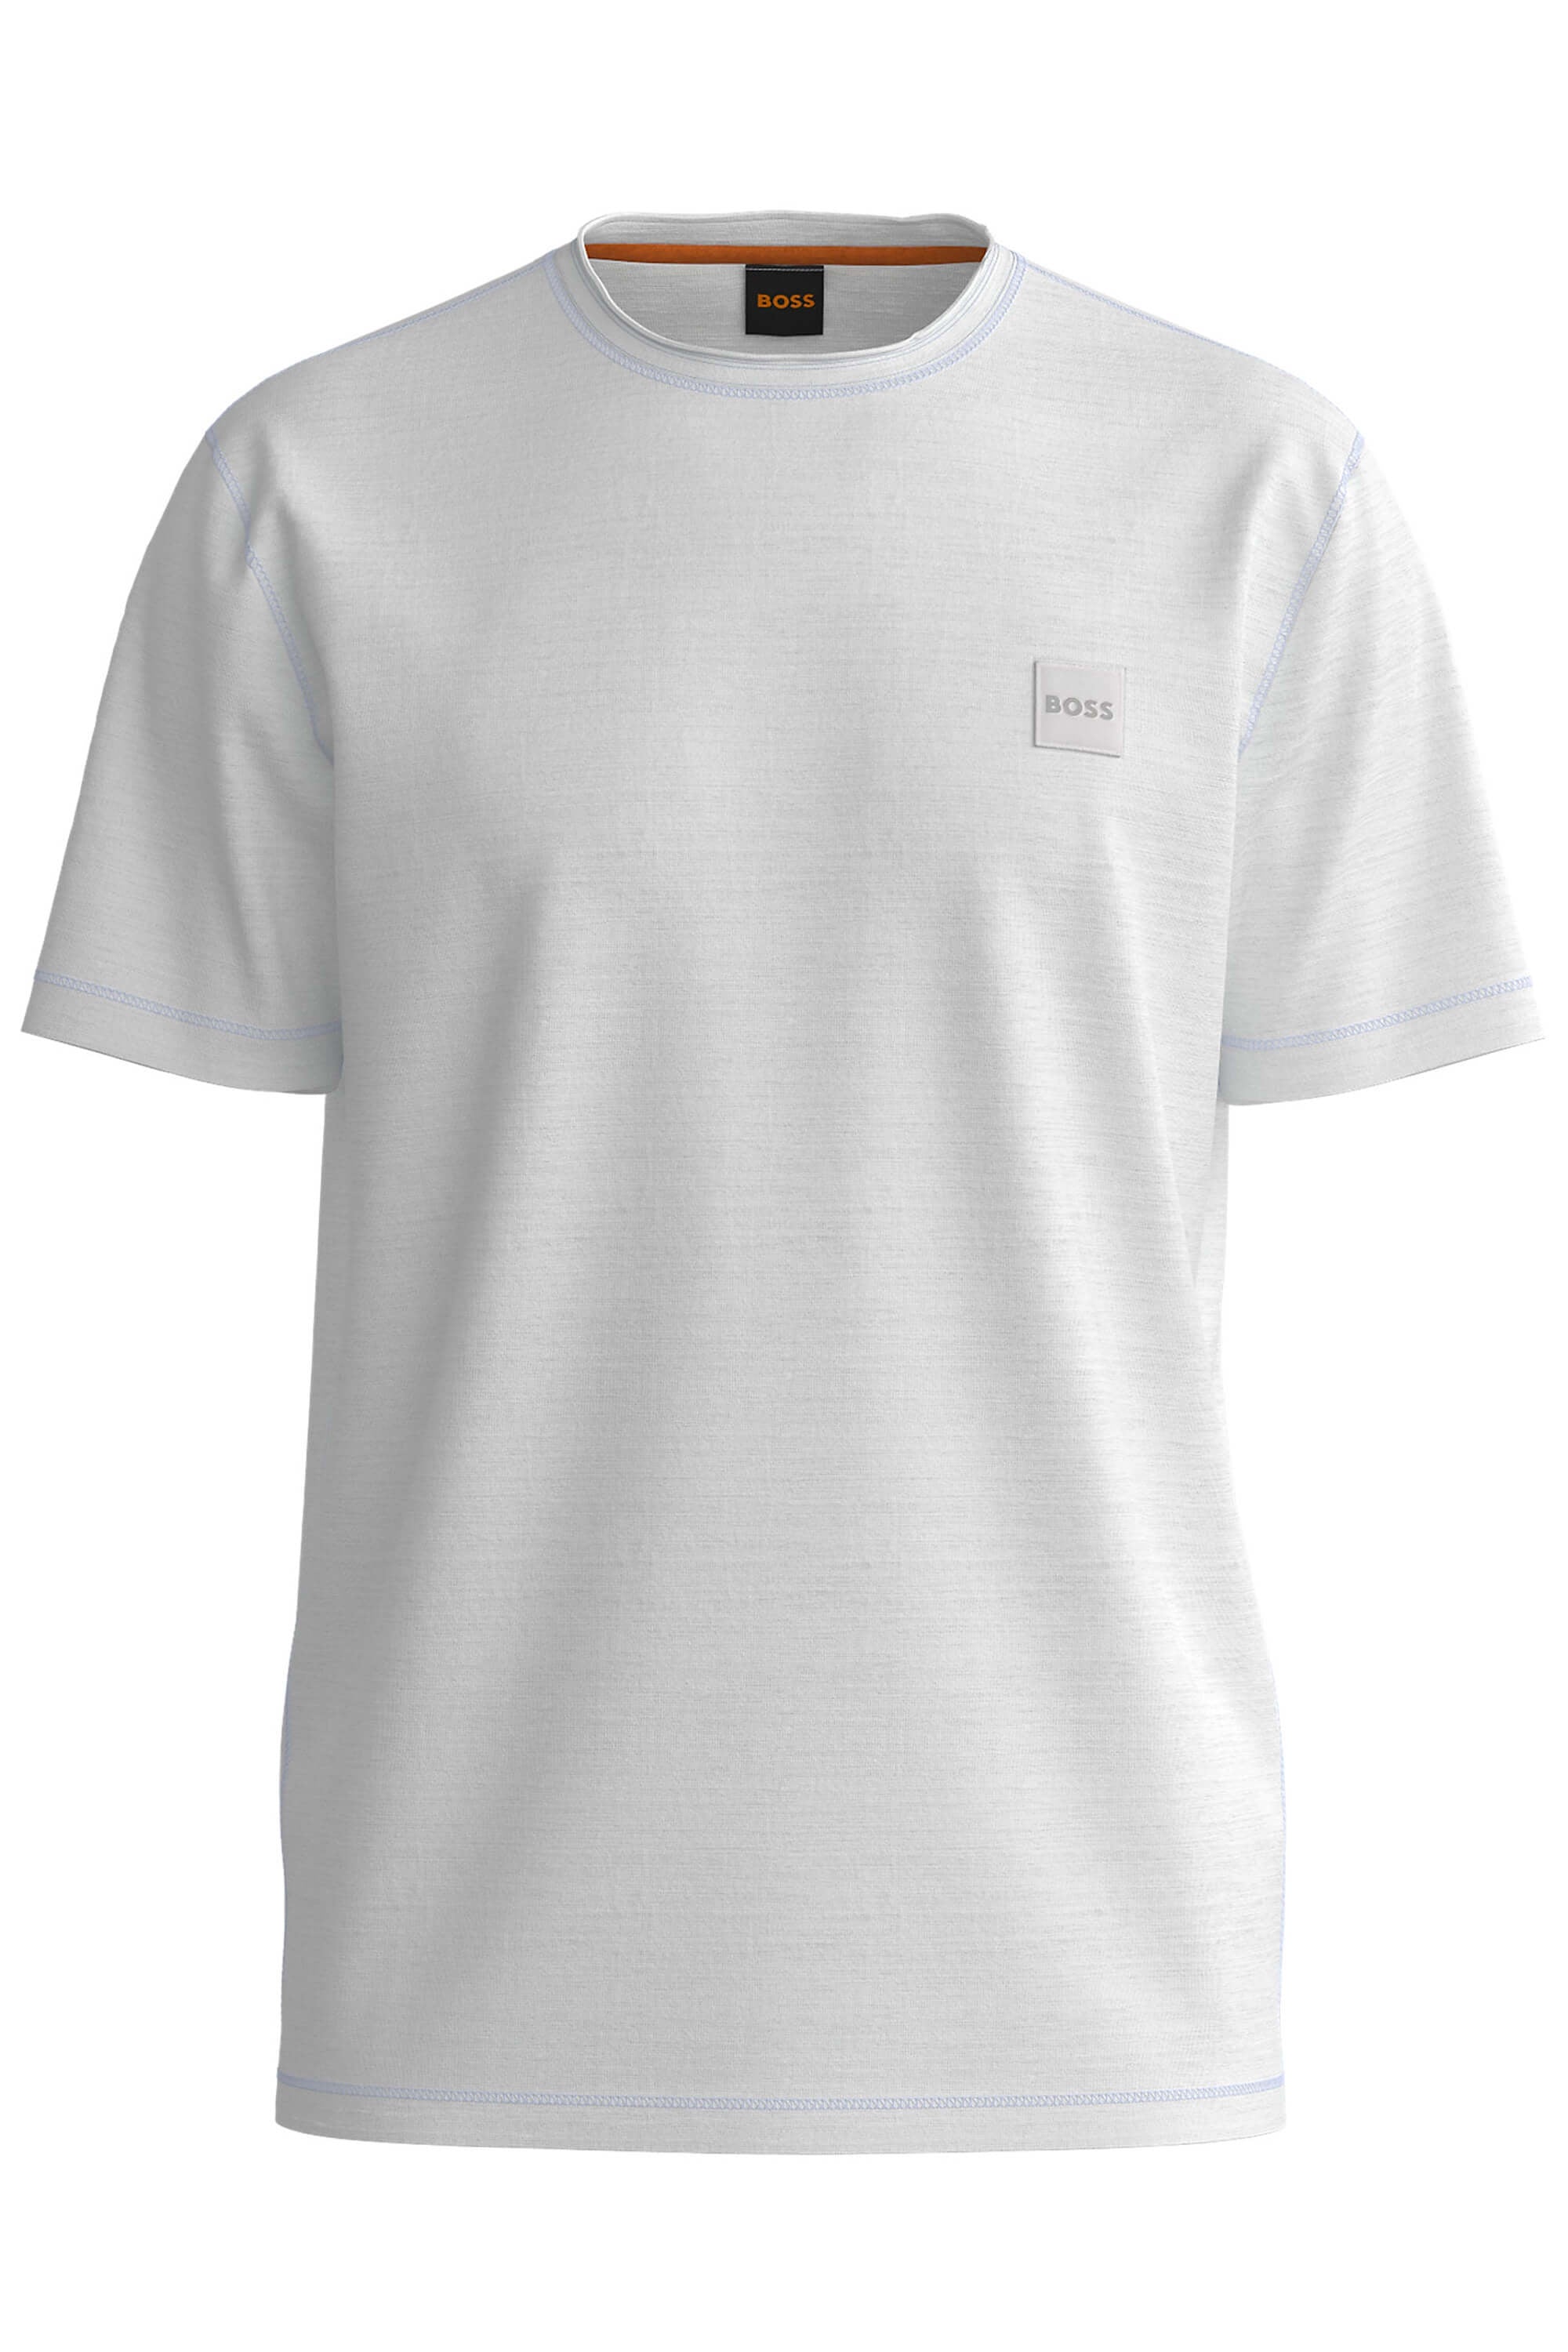 Hugo Boss Tegood T-Shirt White